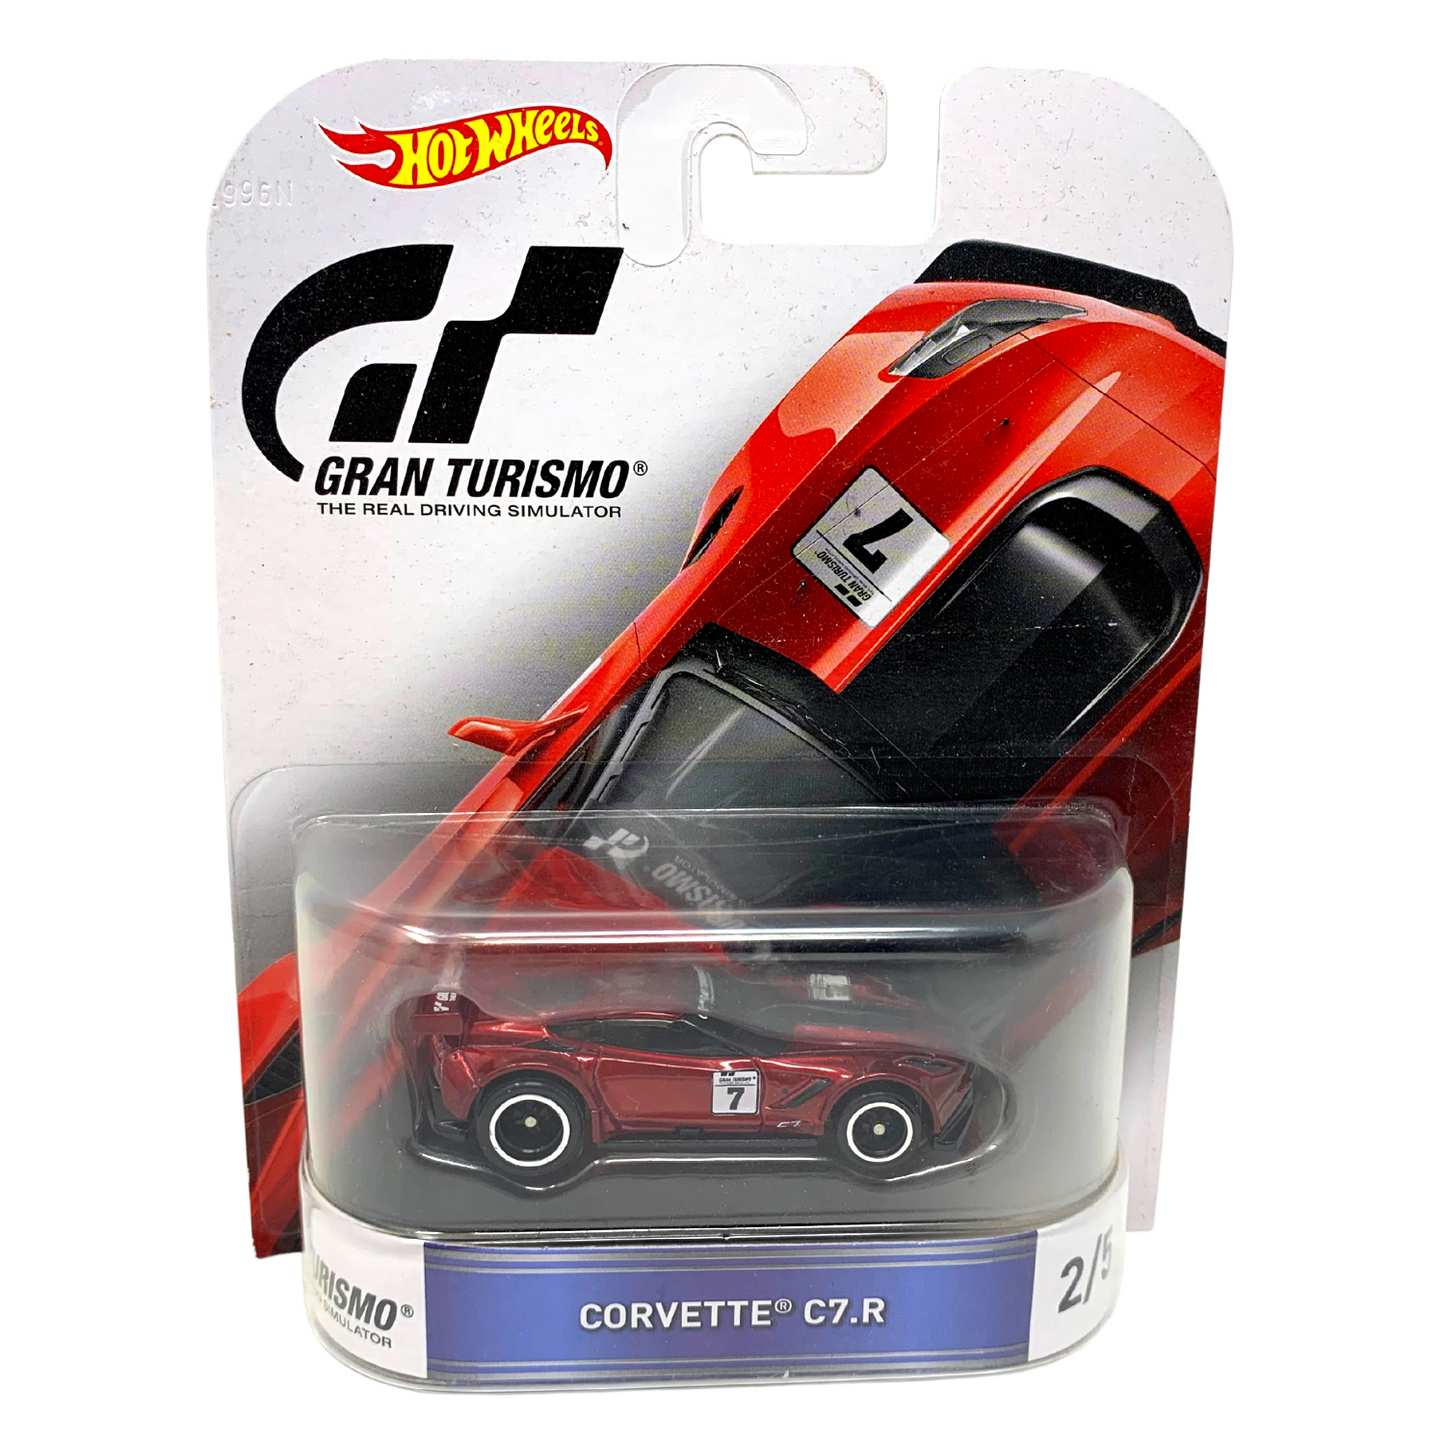 Hot Wheels Retro Entertainment Gran Turismo Corvette C7.R 1:64 Diecast